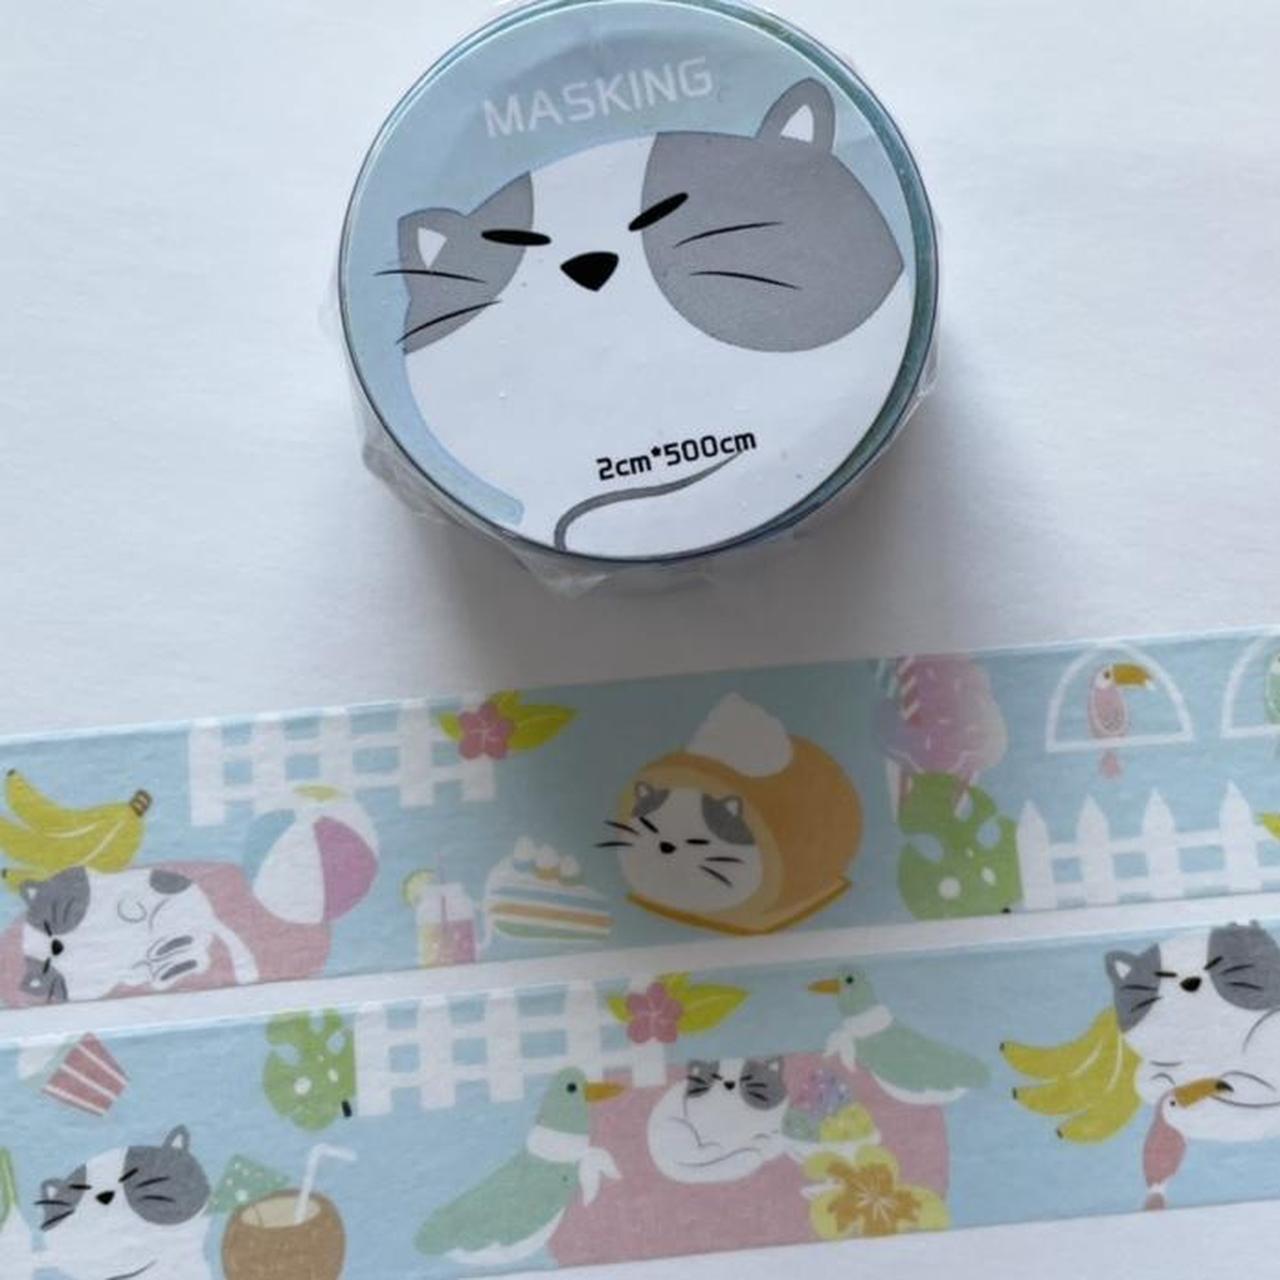 Product Image 1 - Cat Washi Tape
The washi tape